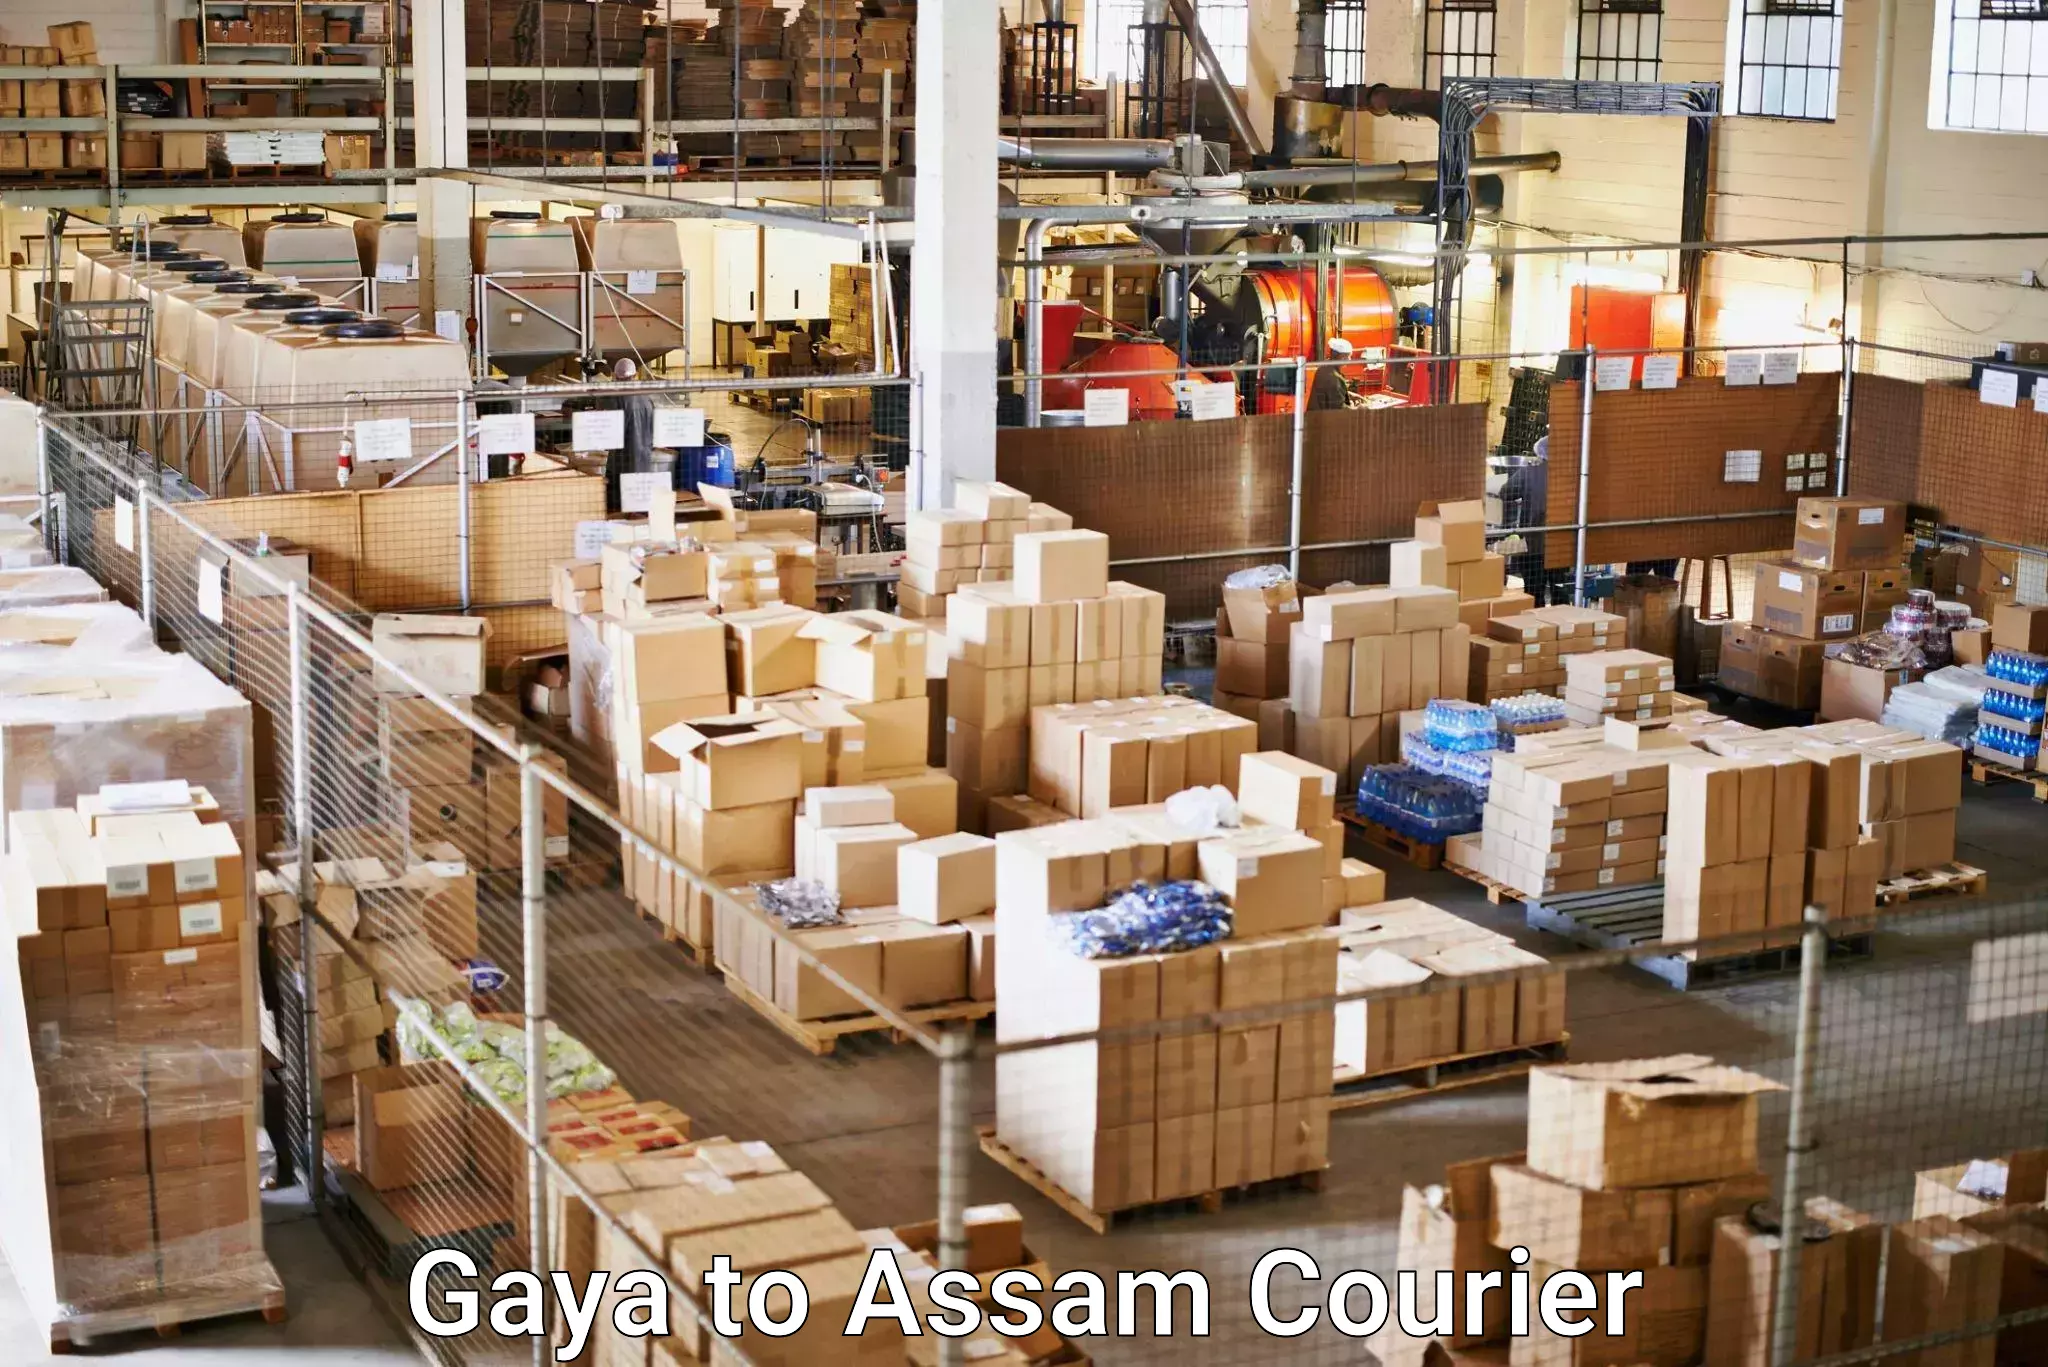 Digital shipping tools Gaya to Lala Assam